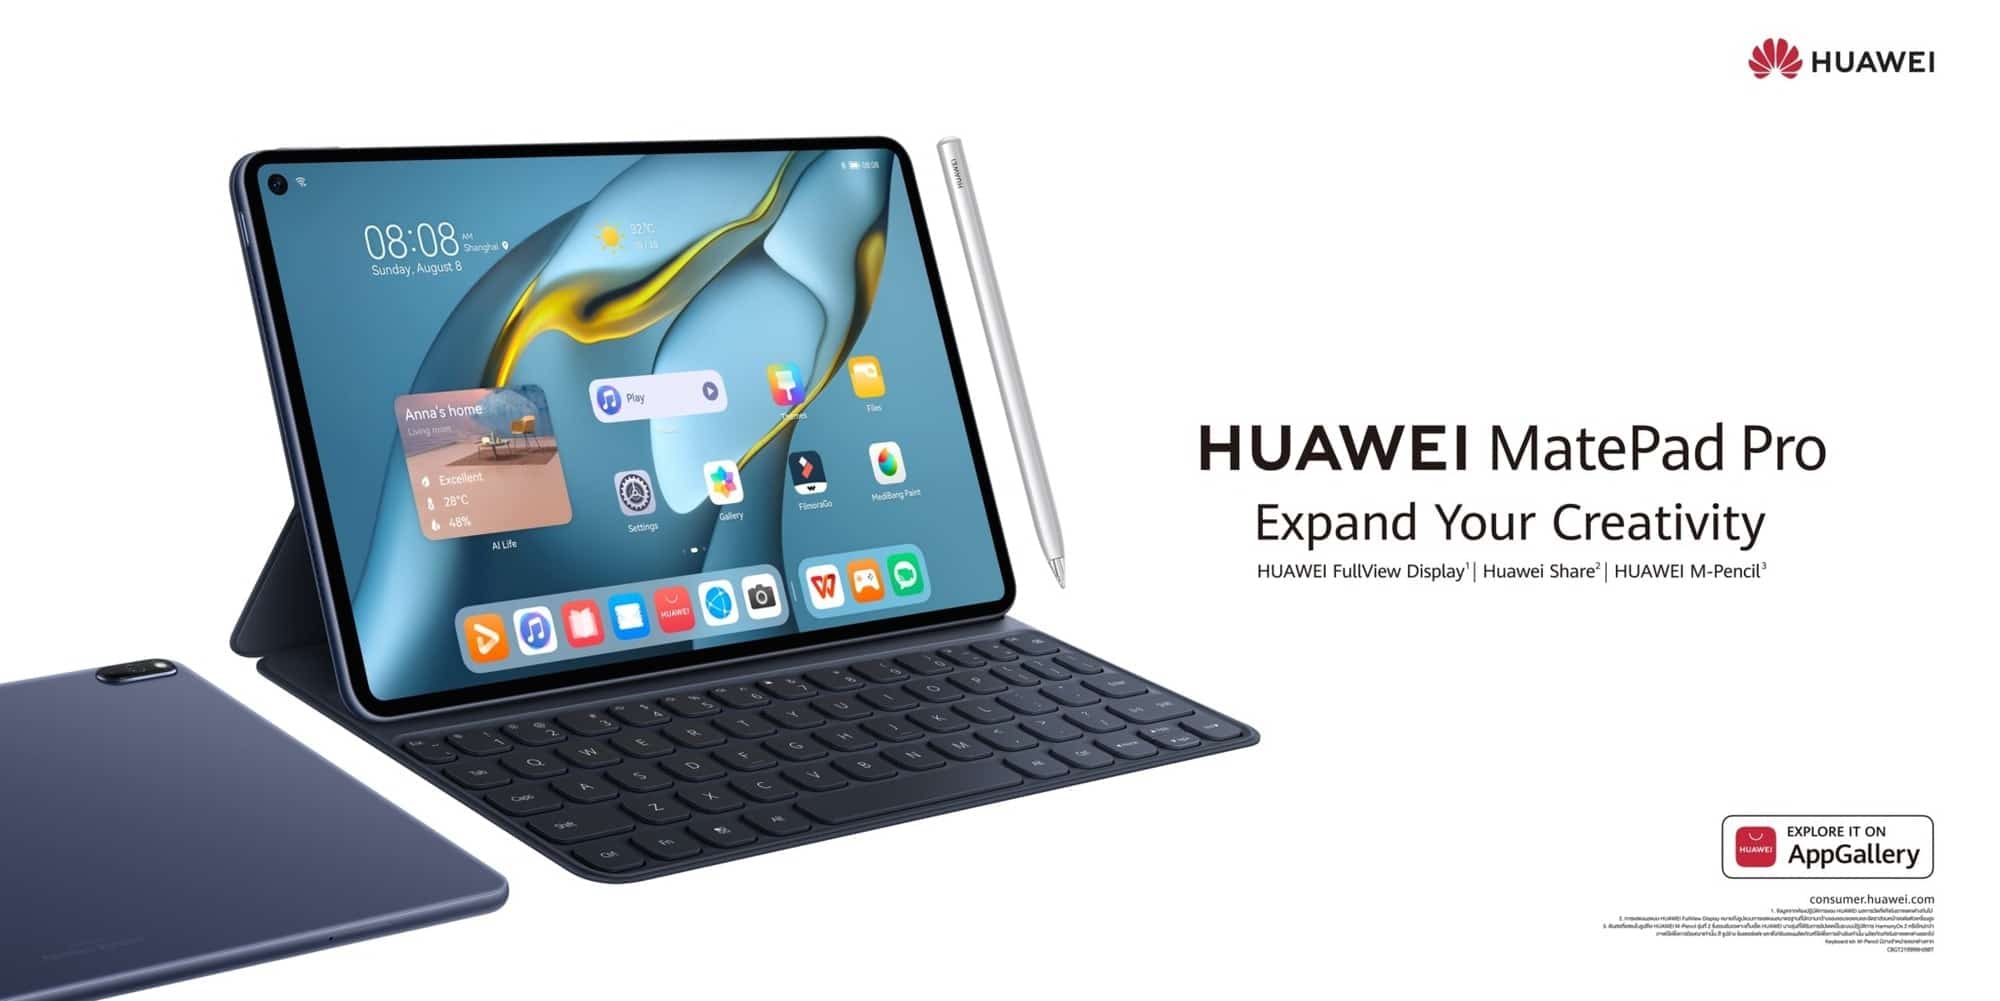 HUAWEI MatePad Pro 10.8-inch ไอเทมเพื่องานอาร์ตสำหรับคนรุ่นใหม่ สร้างสรรค์สนุก ปลุกจินตนาการ 19